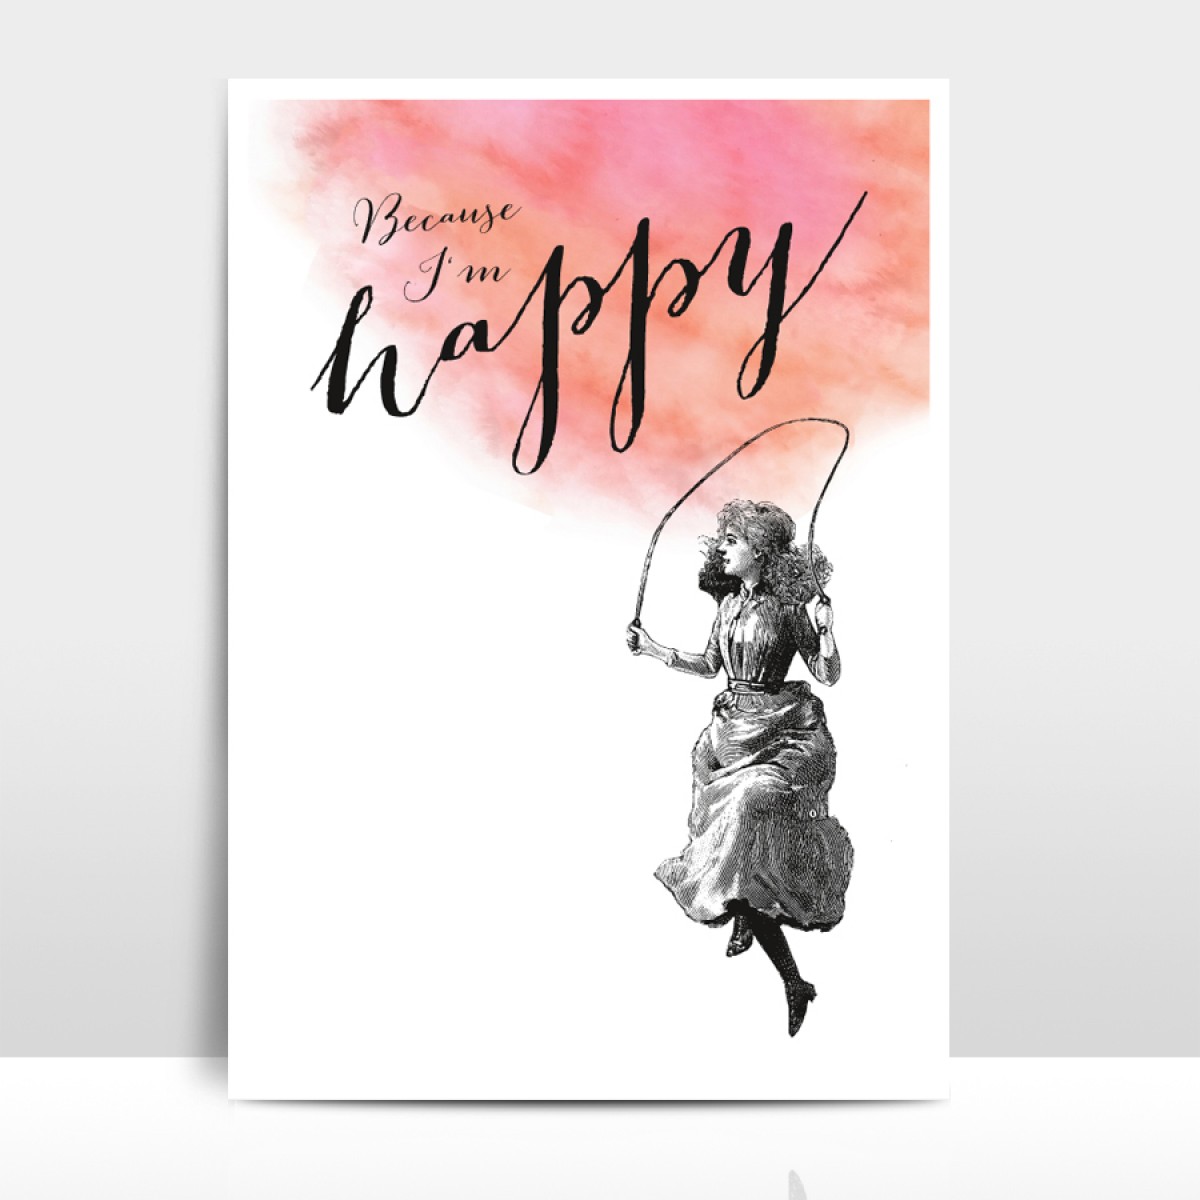 A4 Artprint "Because I'm happy"